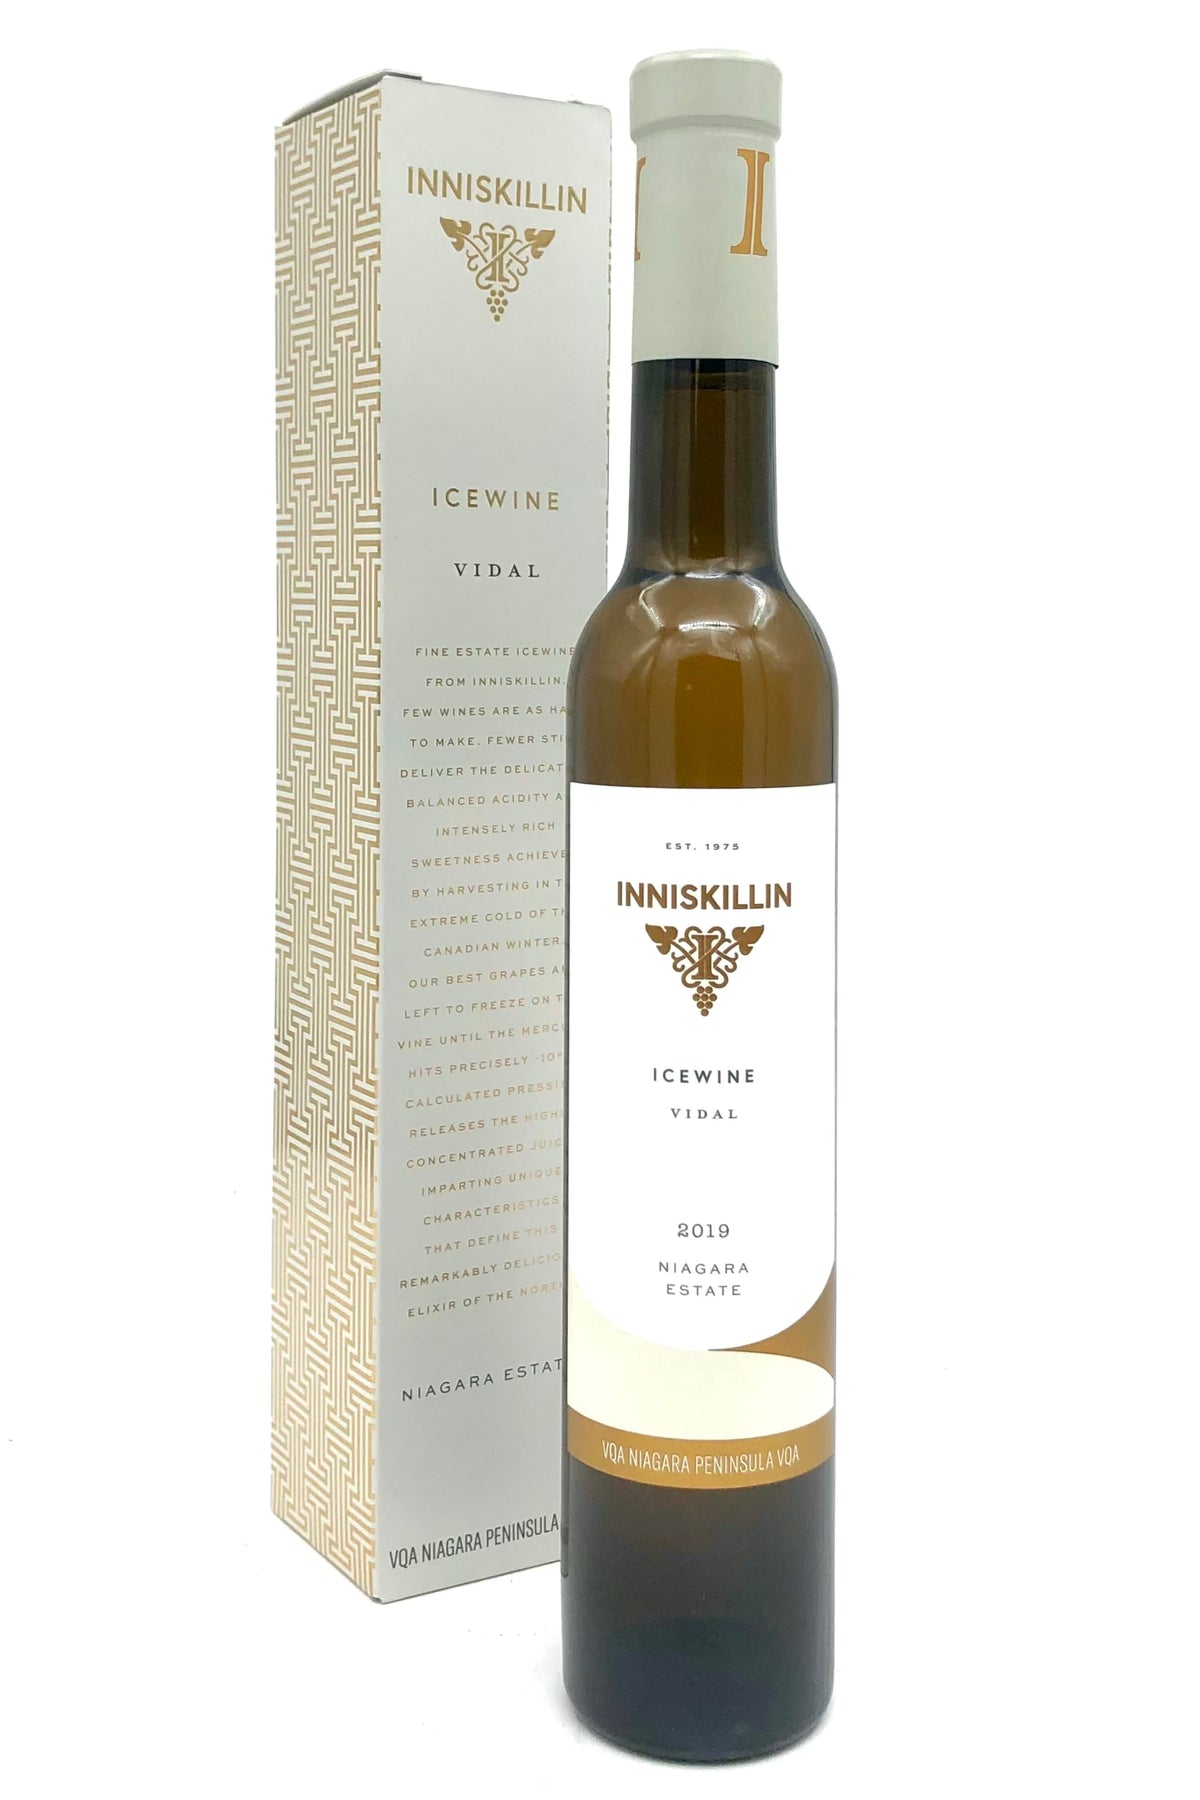 Inniskillin 2019 Vidal Icewine 375 ml